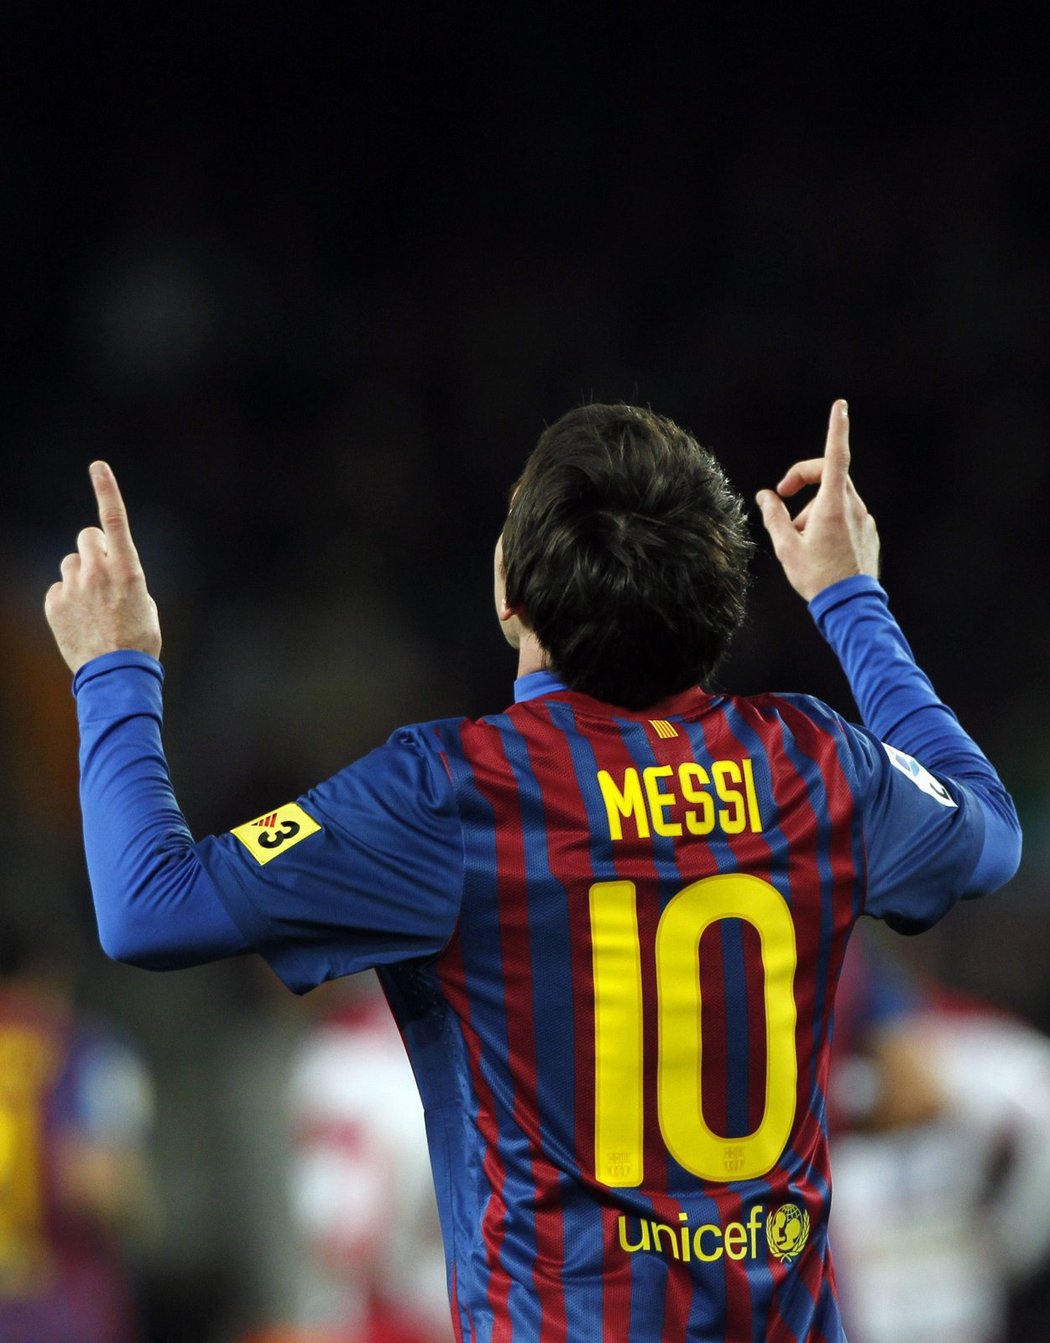 Víc než ten nahoře? Messi zůstává skromným chlapíkem, který na hřišti drtí všechny soupeře